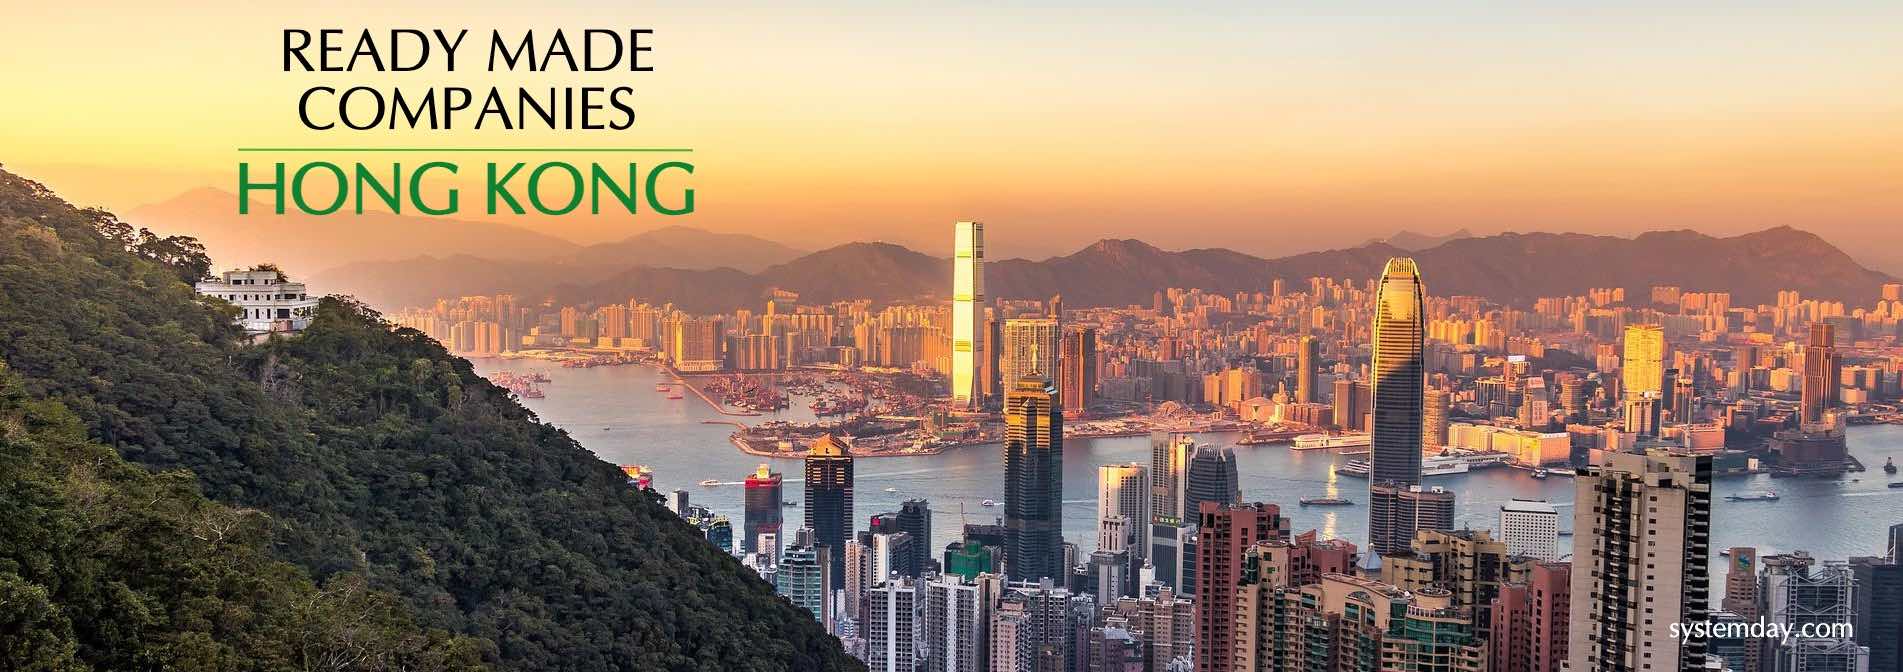 Hong Kong Ready Made Companies